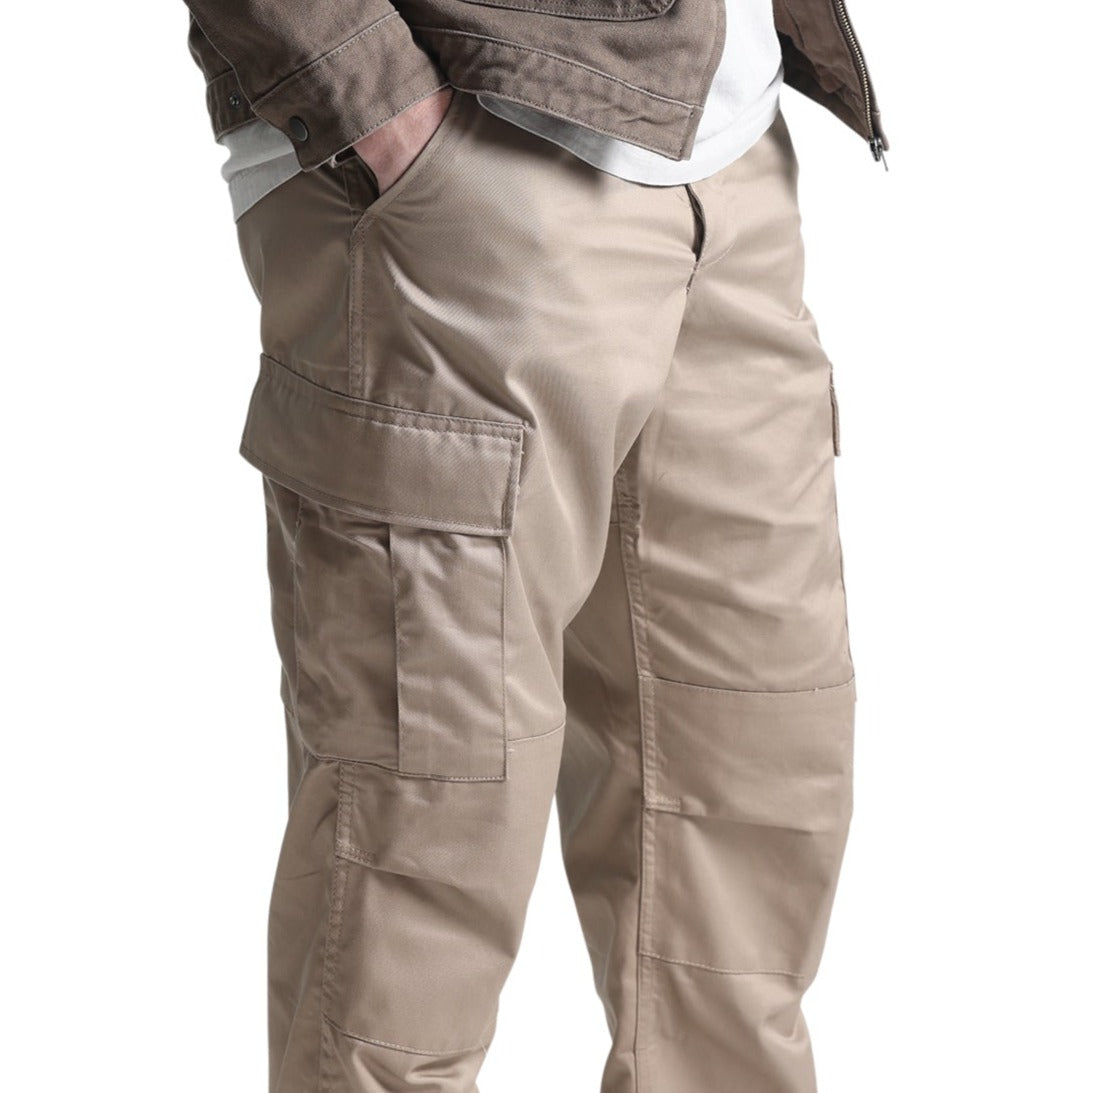 Combat Tactical Pants - BDU (Battle Dress Uniform) - Rothco – Royal  Military Surplus